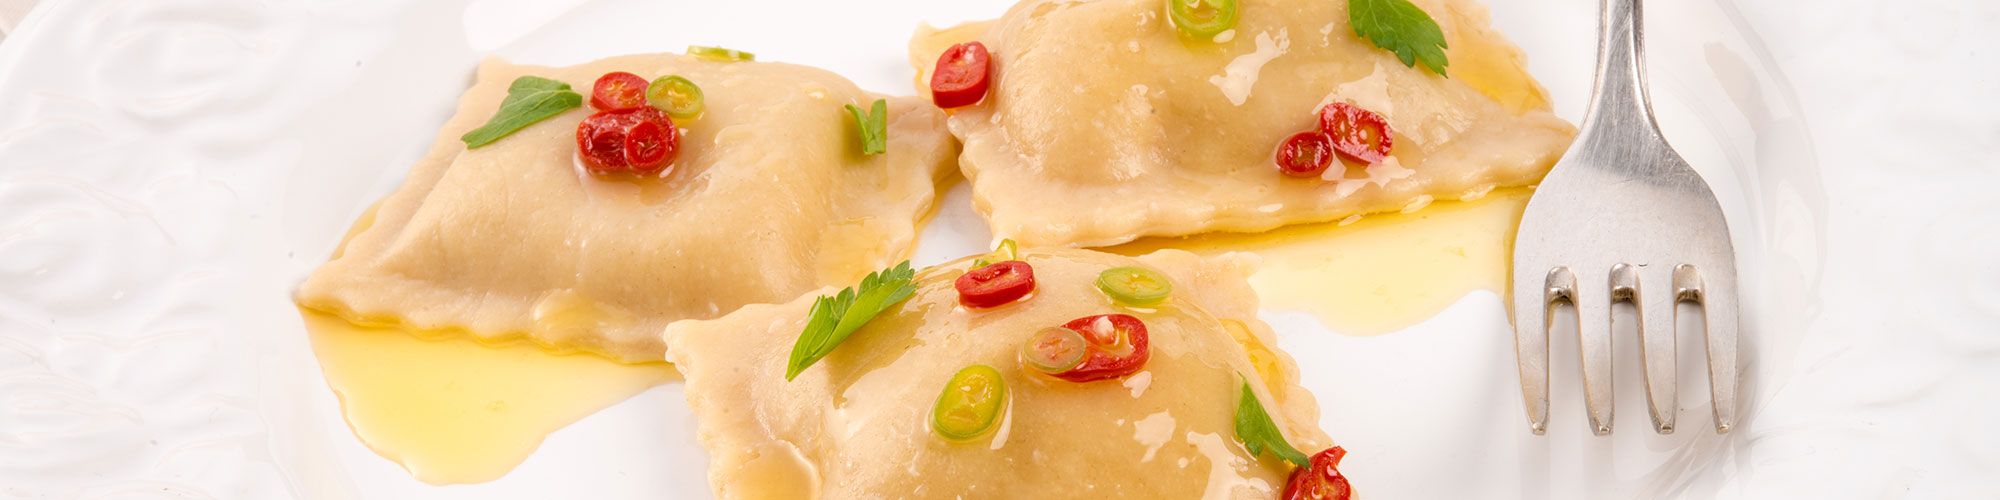 ricetta Ravioloni Ricotta e Spinaci al peperoncino e alloro con pasta fresca